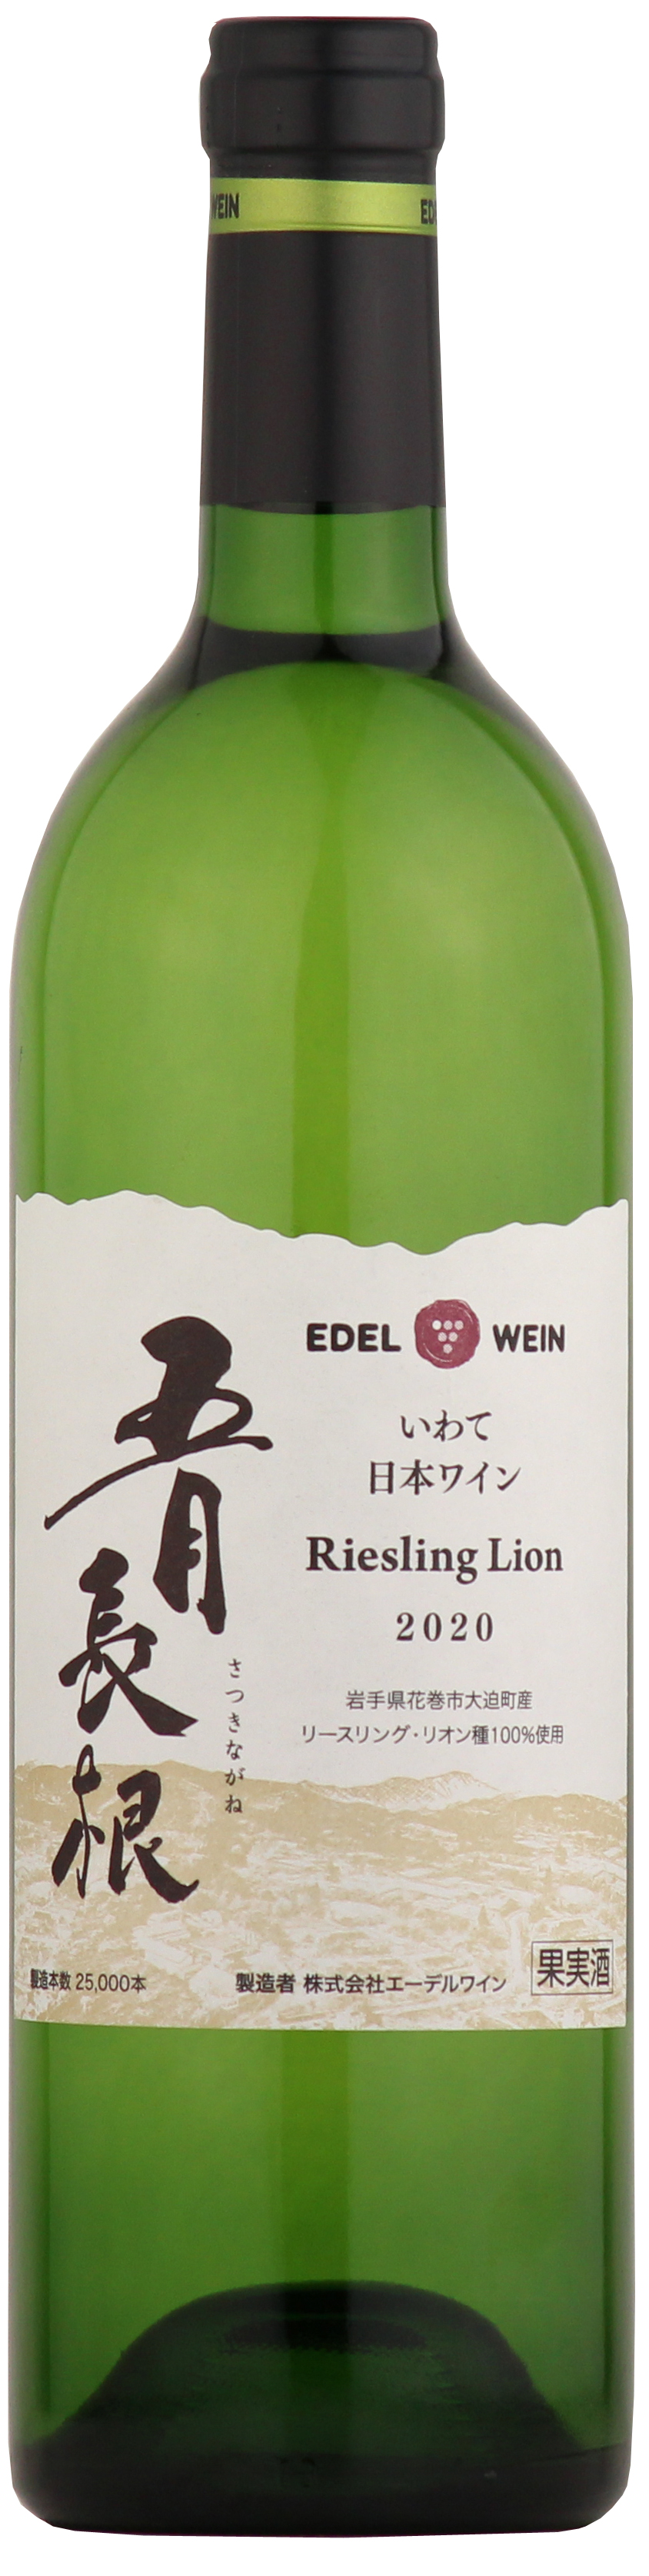 ブランド品 新着セール 岩手の葡萄で作った日本ワインです 2021年7月1日より販売開始エーデルワイン五月長リースリングリオン750ml